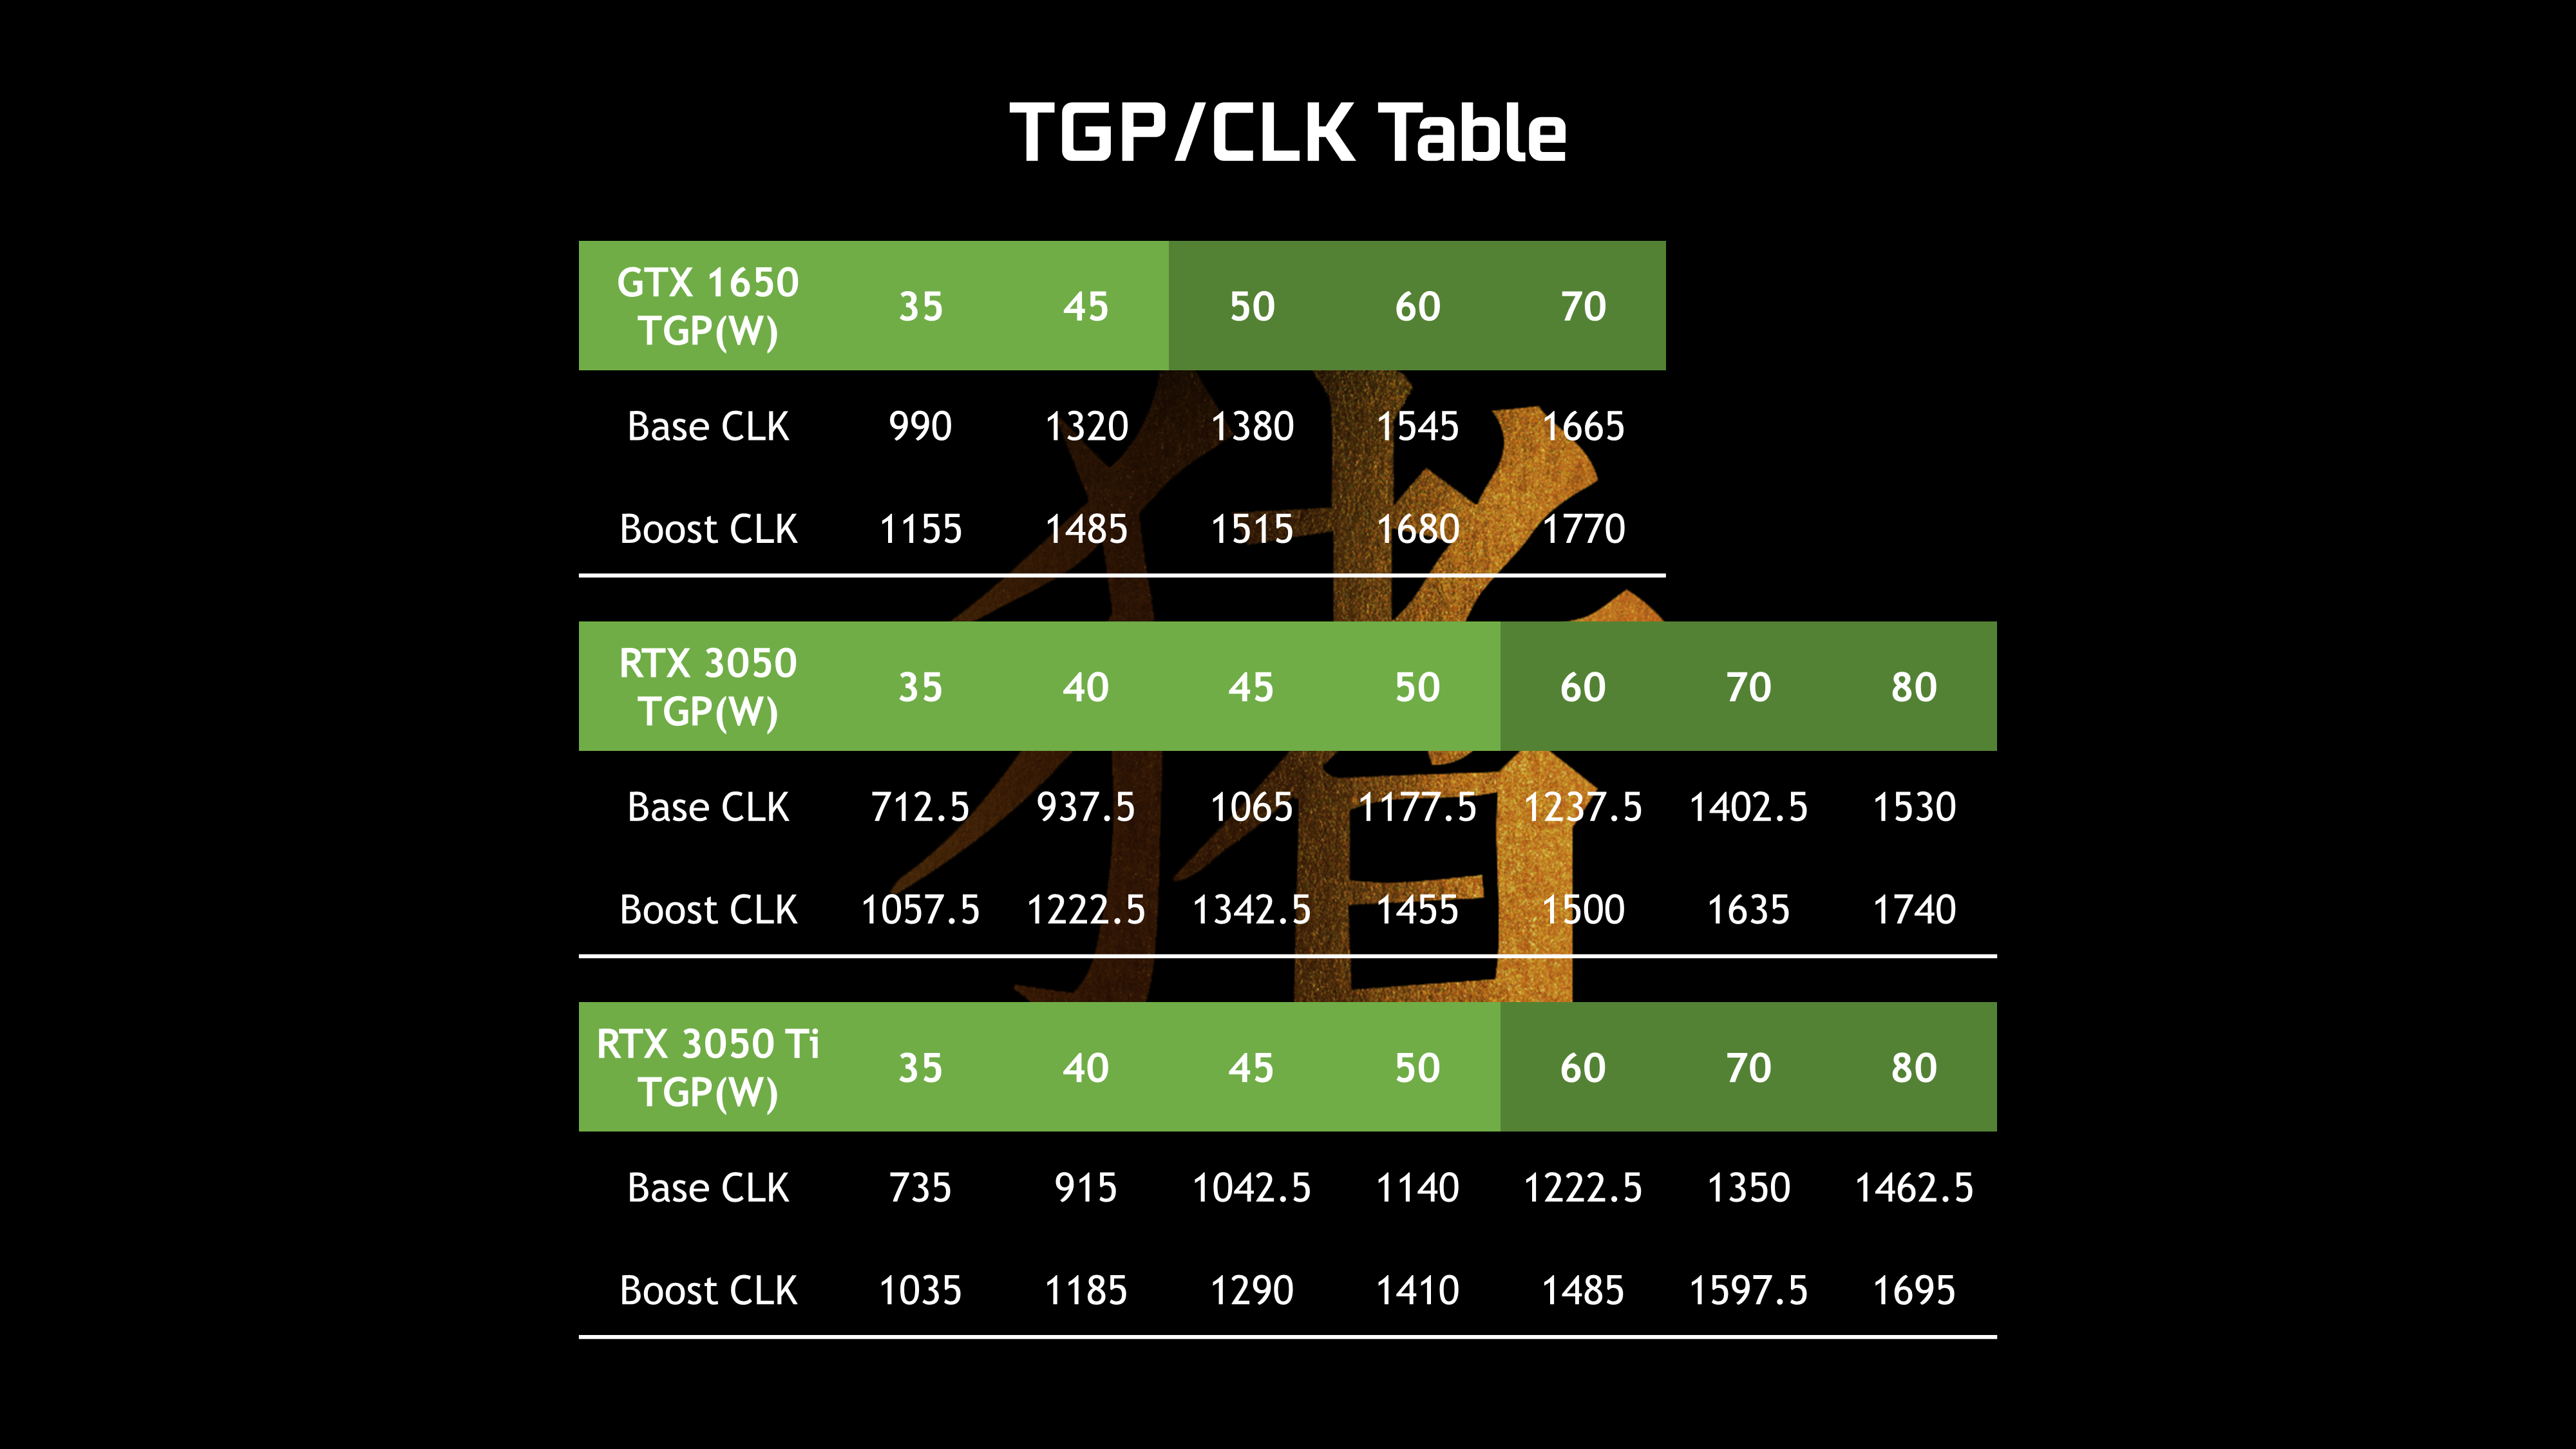 深入解析 GT820 与 GTX850 显卡的区别及实际体验  第2张